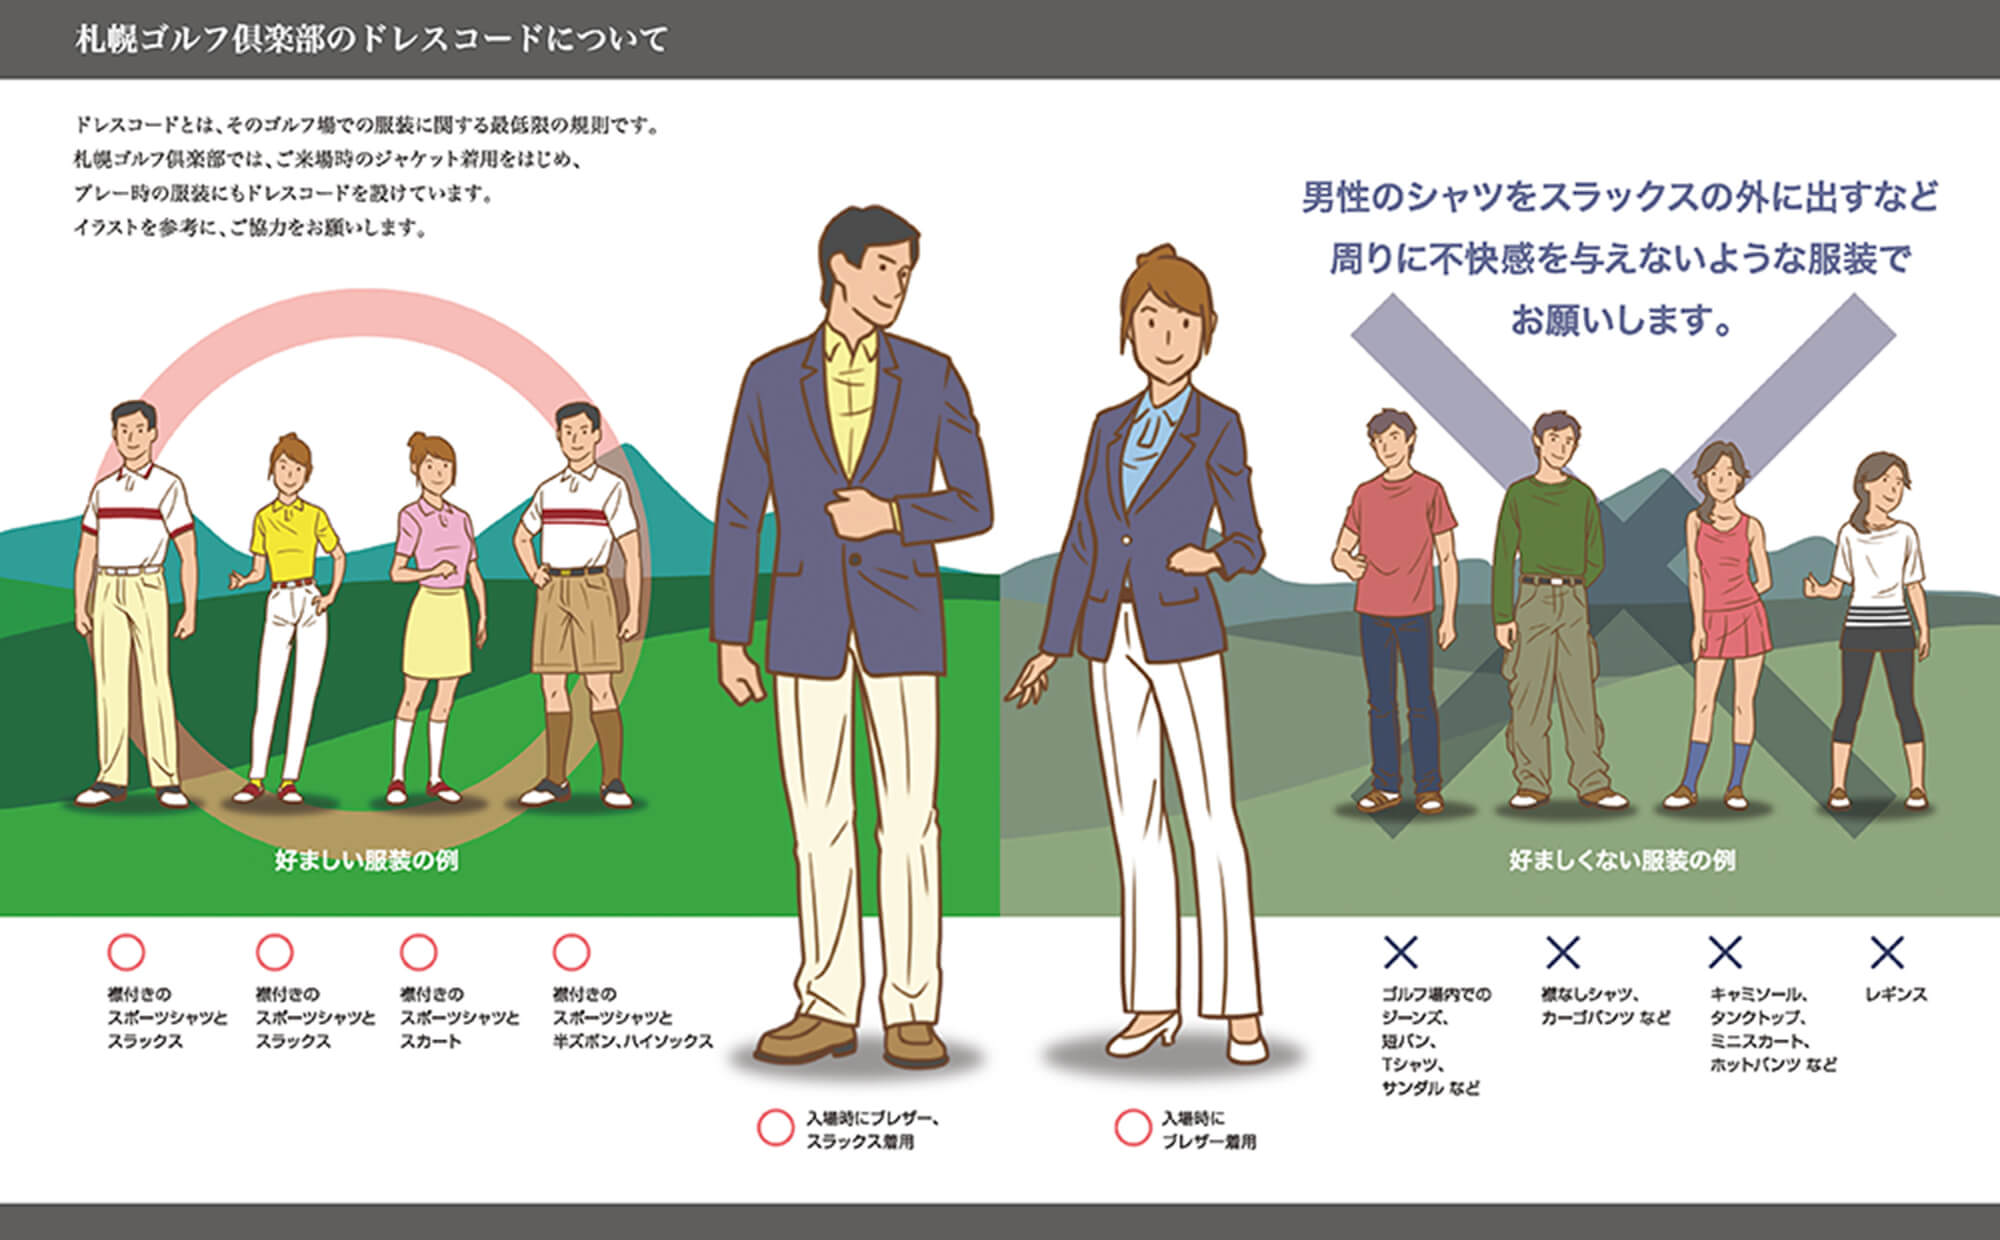 札幌ゴルフ倶楽部のドレスコードについて